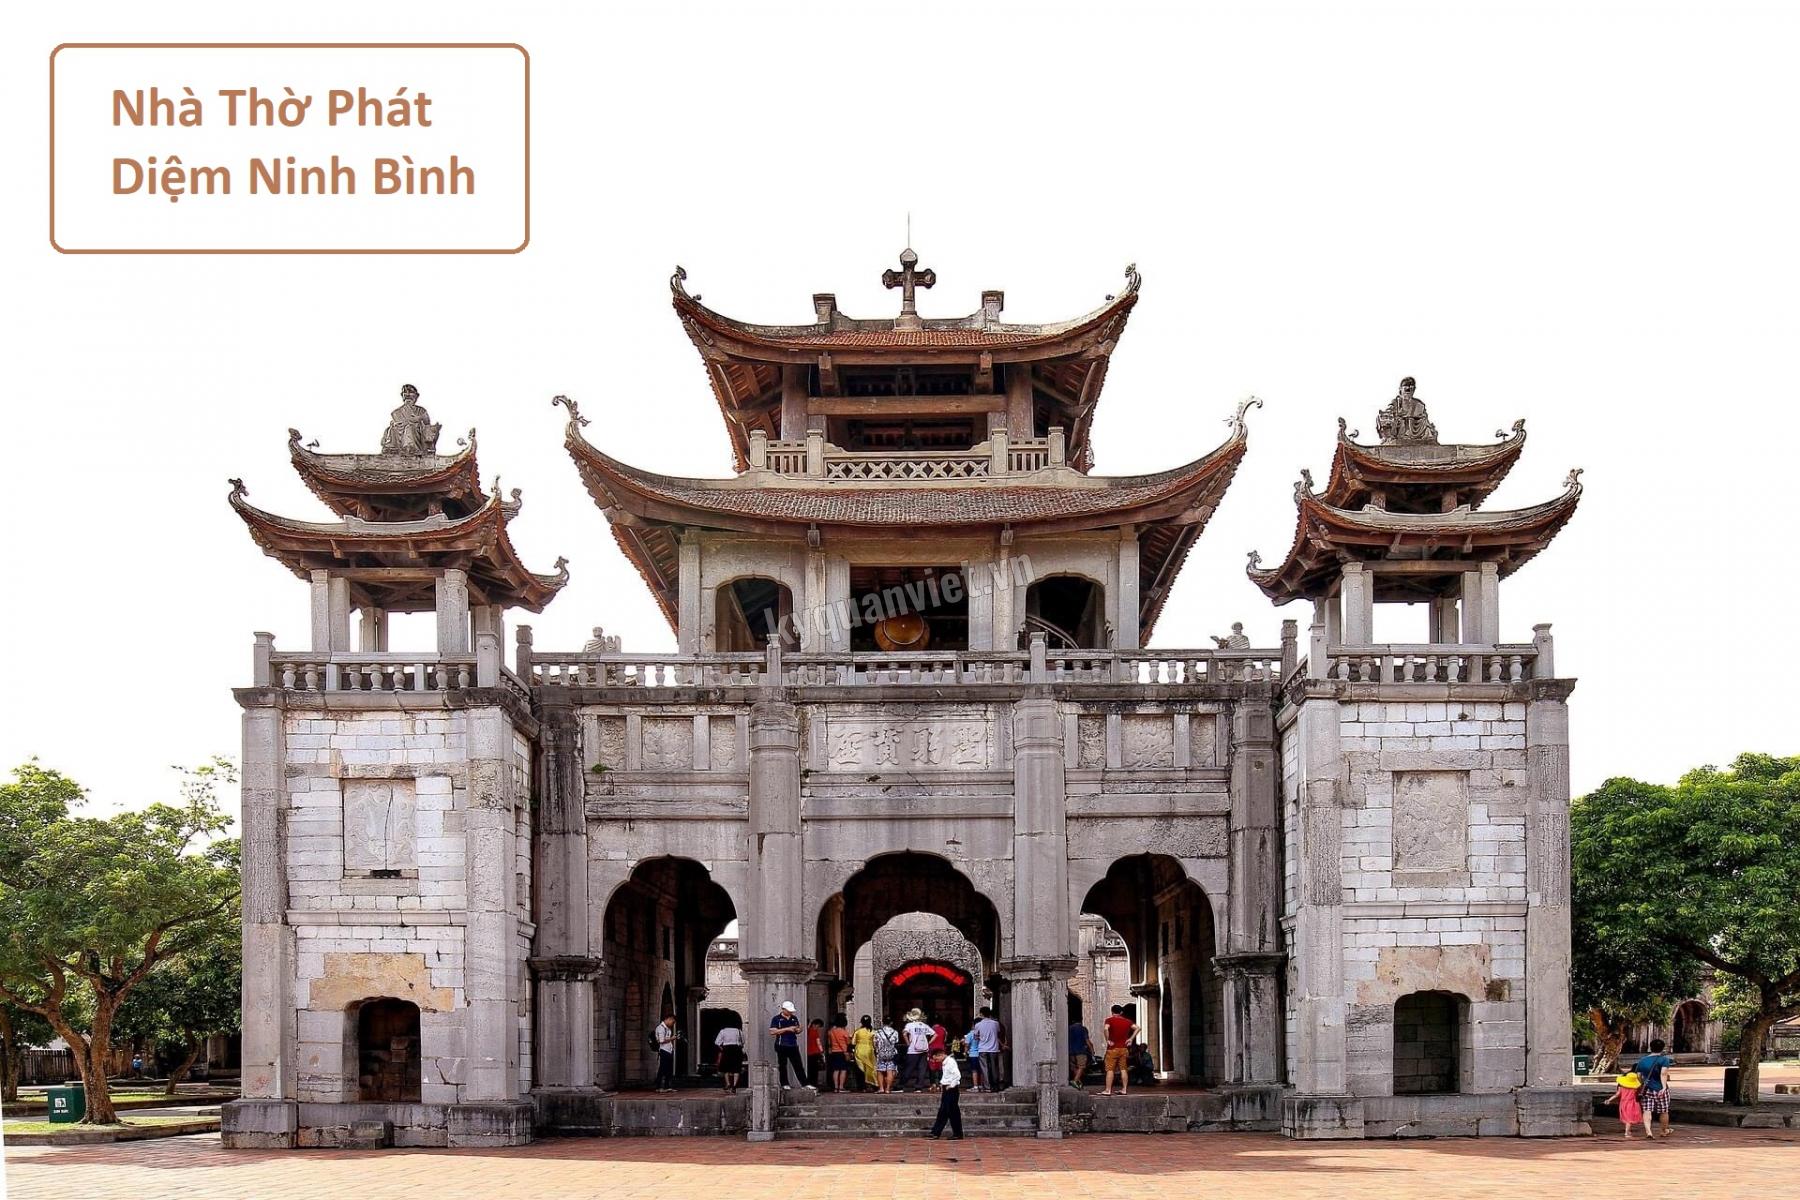 Nhà Thờ Phát Diệm - Kiến trúc độc đáo trăm năm của Ninh Bình